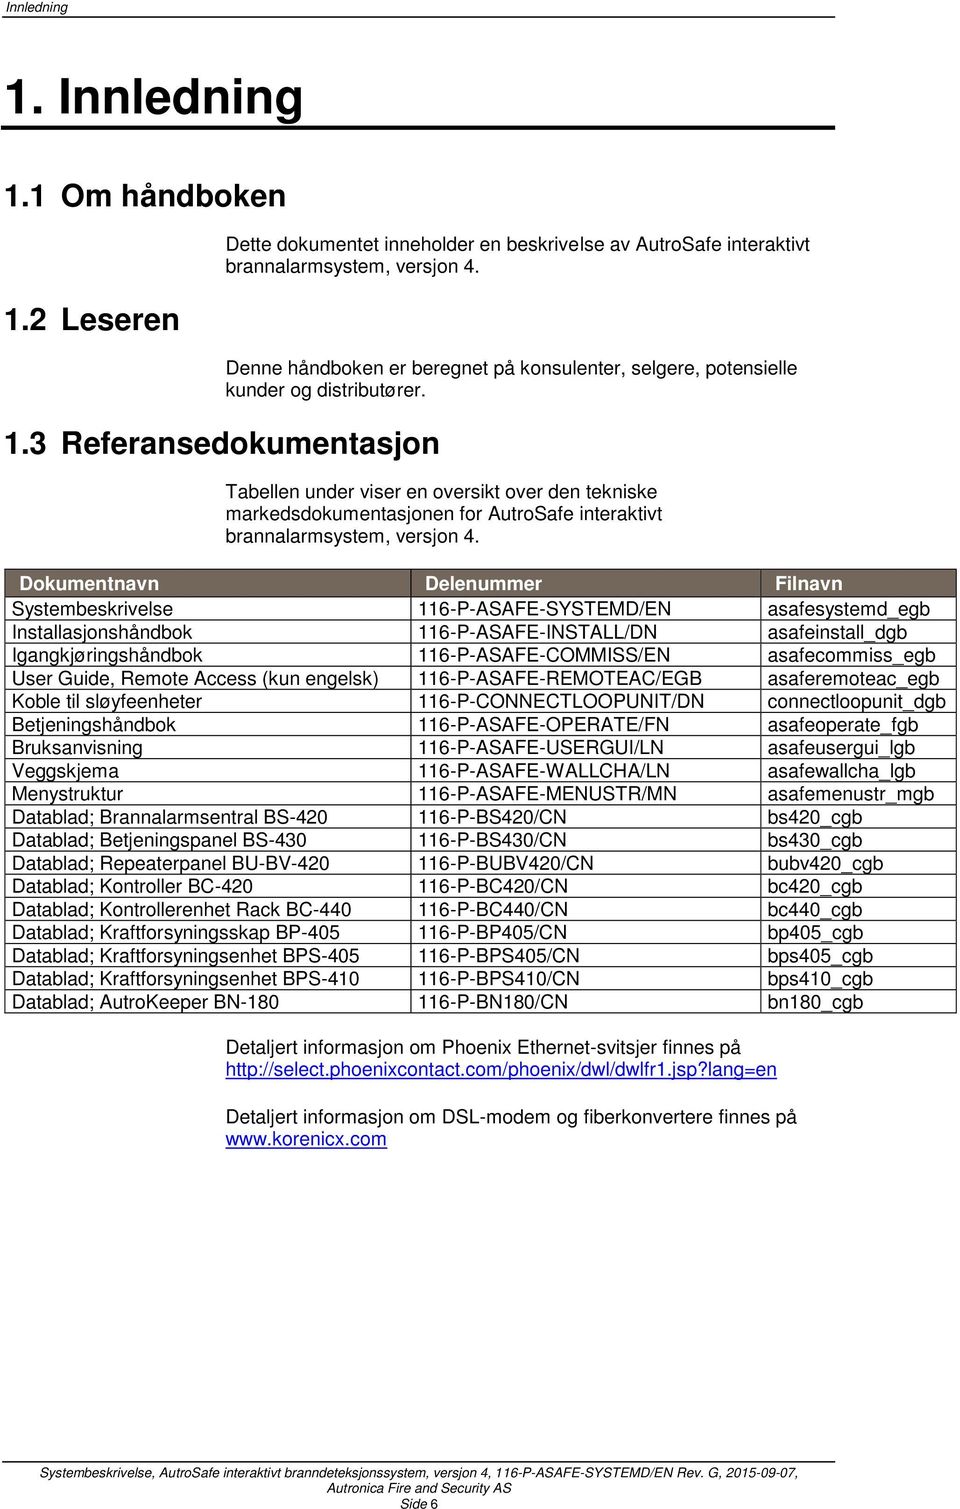 3 Referansedokumentasjon Tabellen under viser en oversikt over den tekniske markedsdokumentasjonen for AutroSafe interaktivt brannalarmsystem, versjon 4.